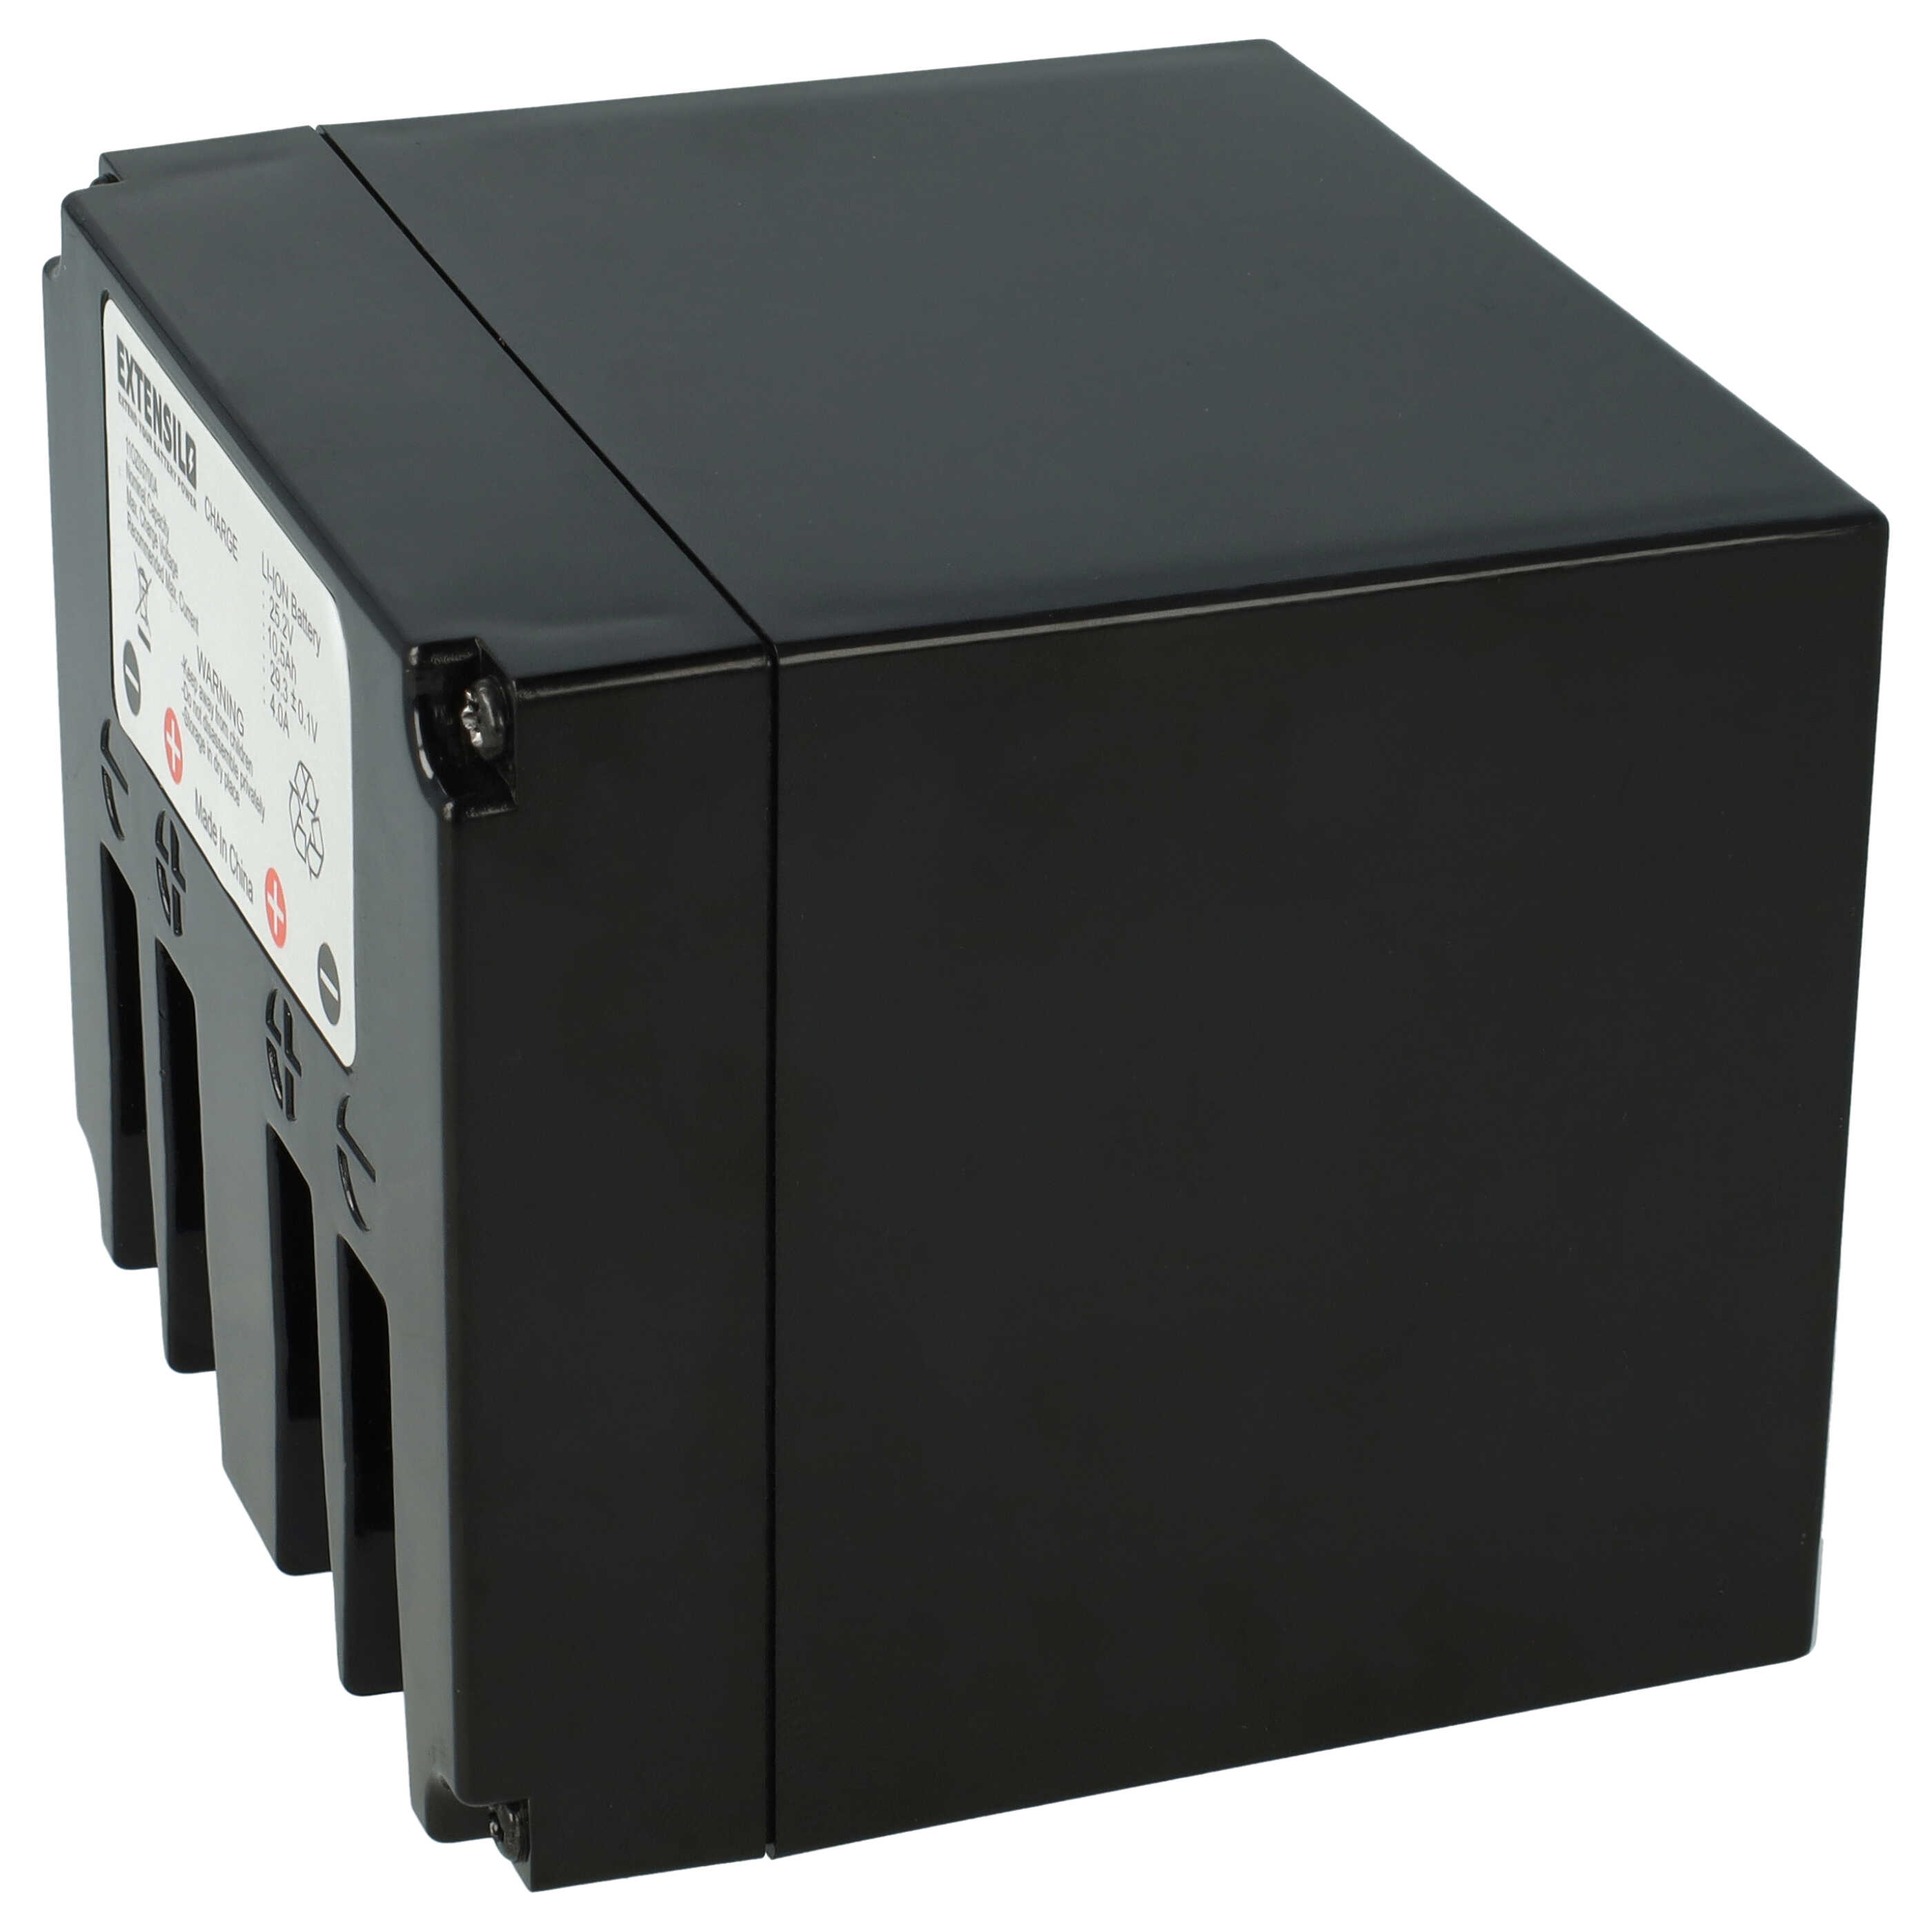 Akumulator do robota koszącego zamiennik Zucchetti typ B, 110Z03700A - 10500 mAh 25,2 V Li-Ion